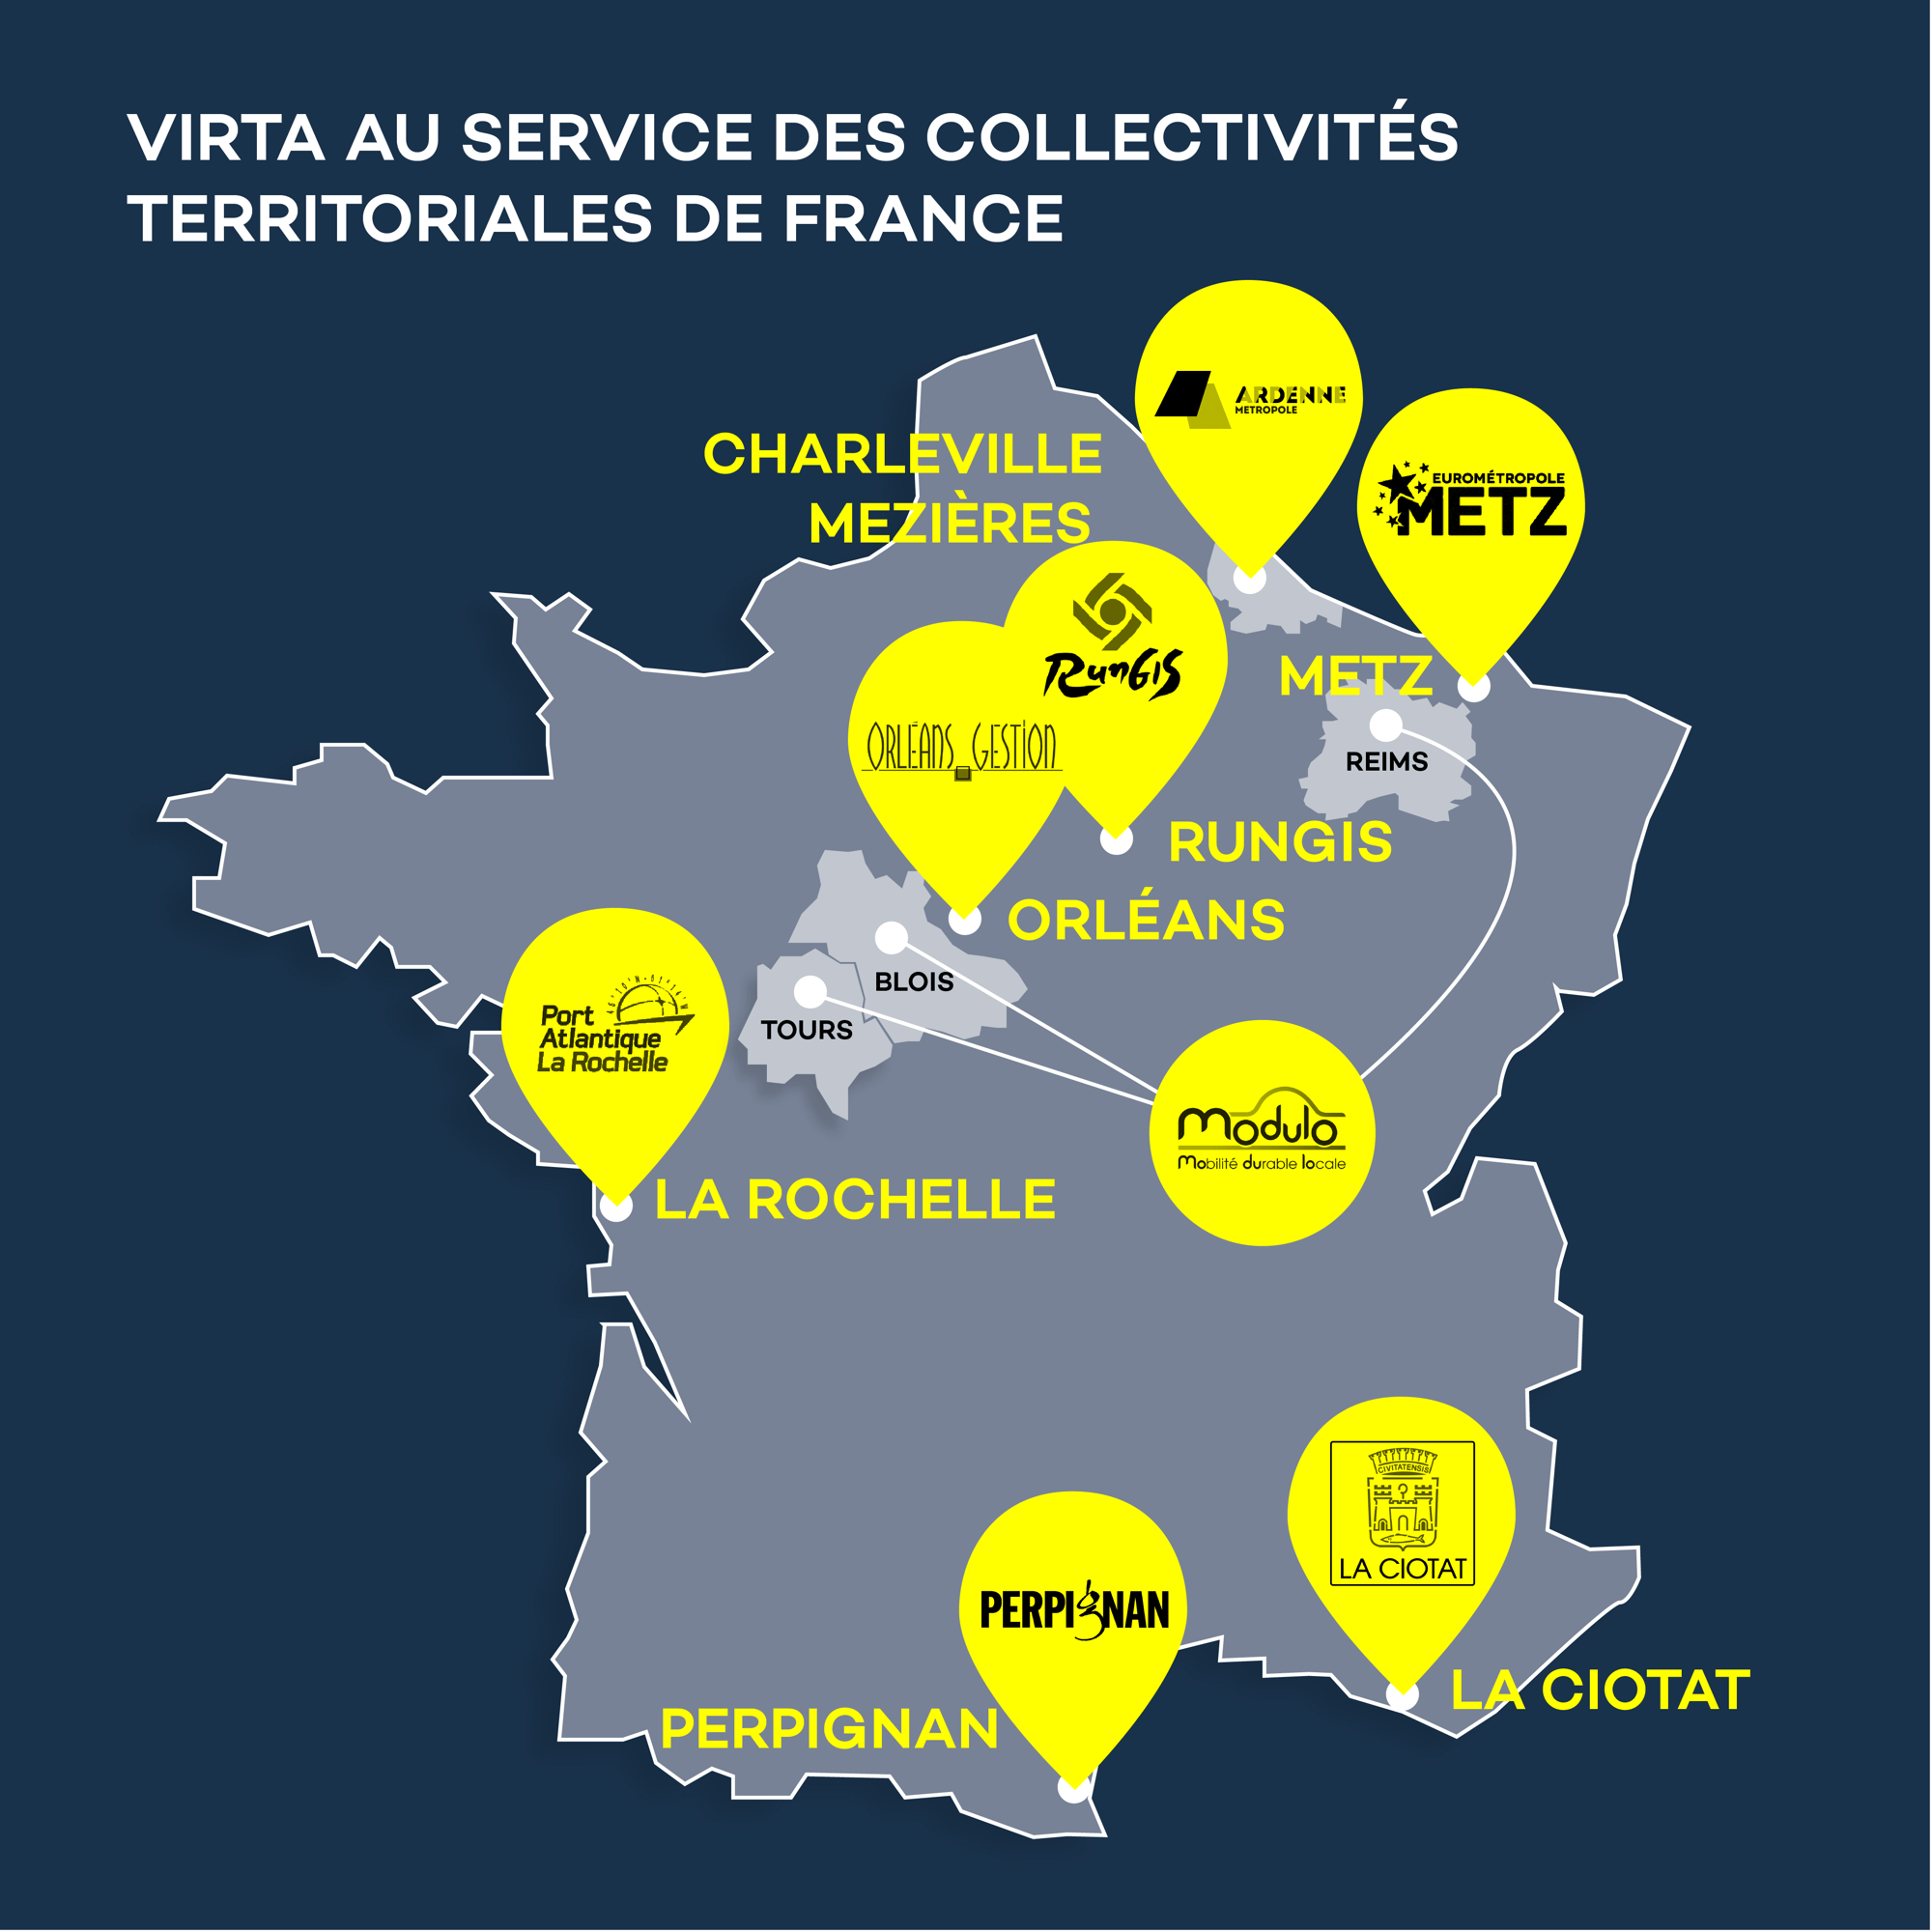 20230922 Virta au service des collectivités territoriales de France